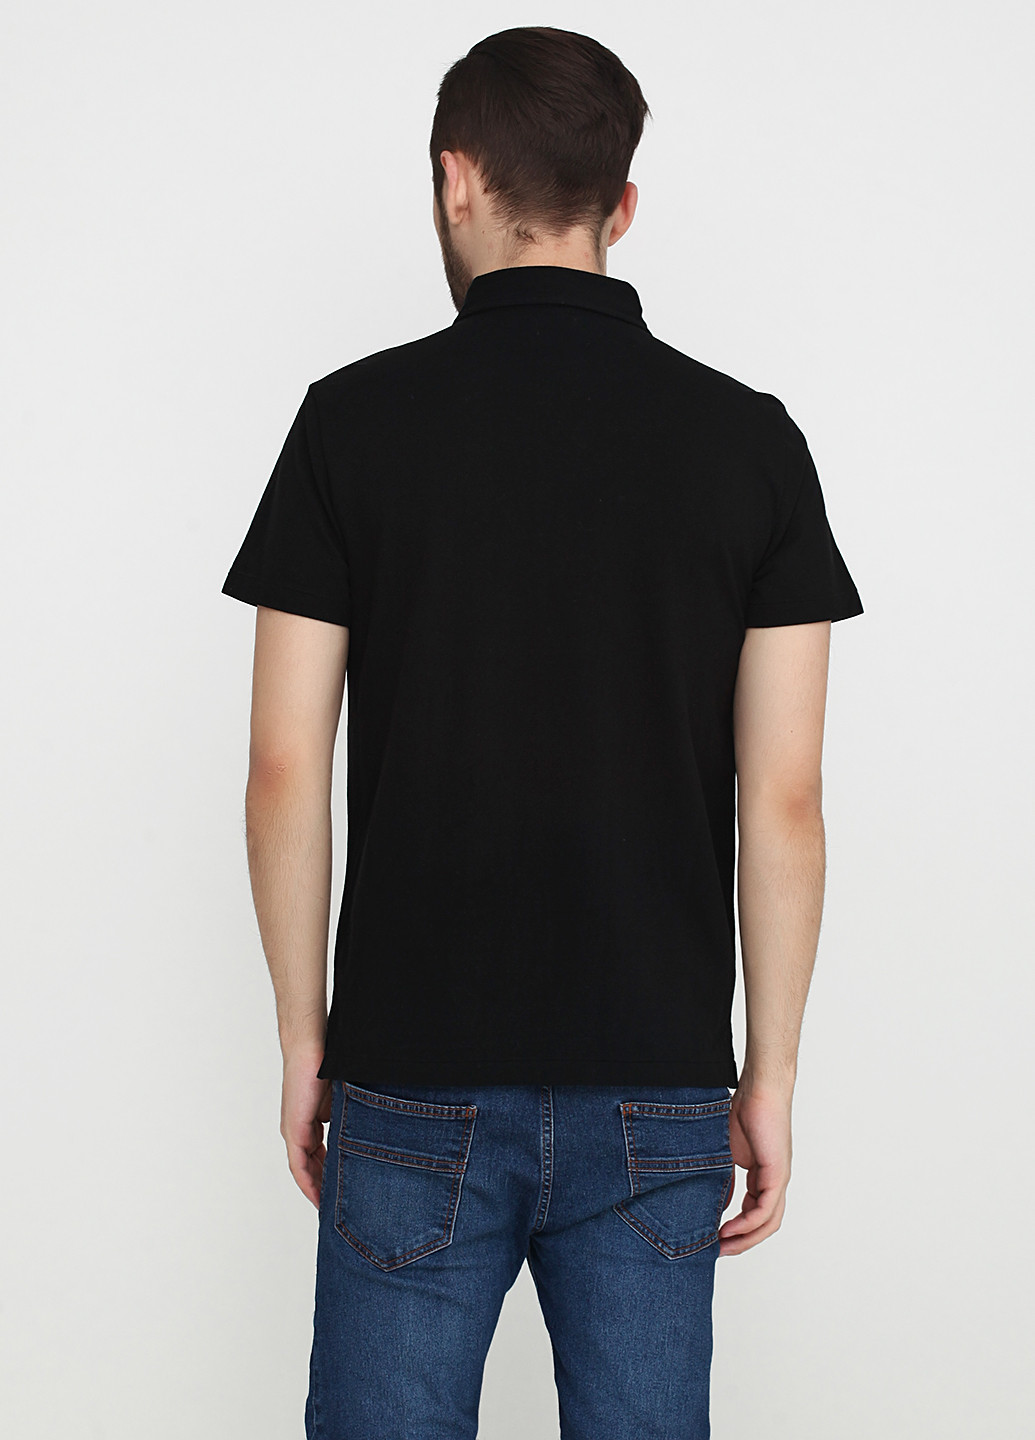 Черная футболка-поло для мужчин Ralph Lauren однотонная